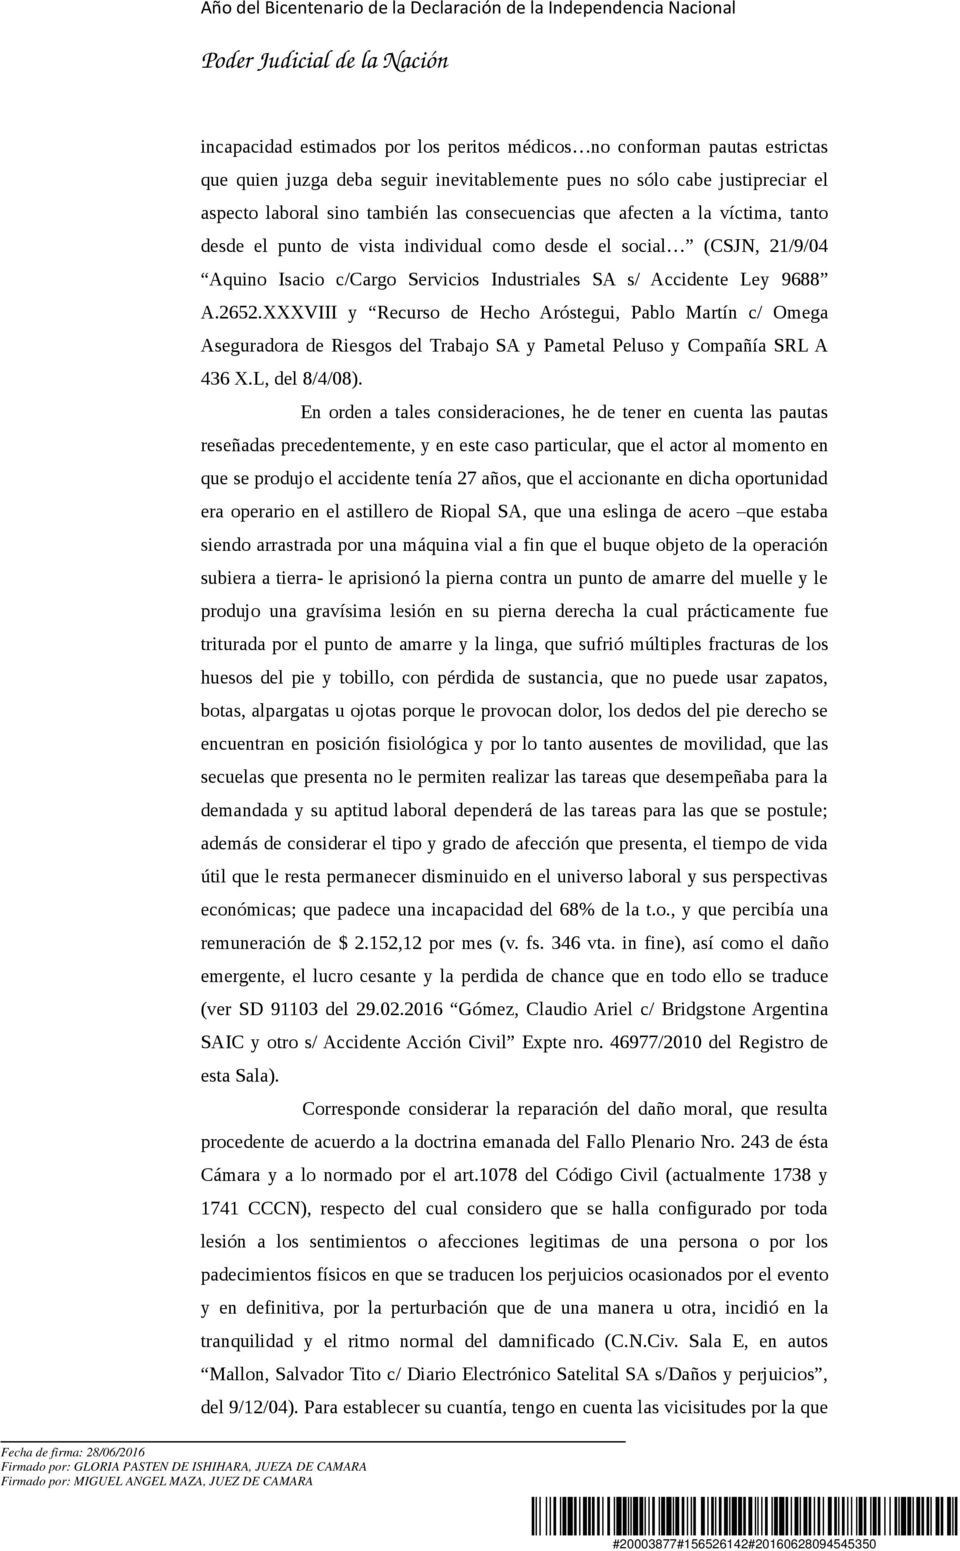 XXXVIII y Recurso de Hecho Aróstegui, Pablo Martín c/ Omega Aseguradora de Riesgos del Trabajo SA y Pametal Peluso y Compañía SRL A 436 X.L, del 8/4/08).